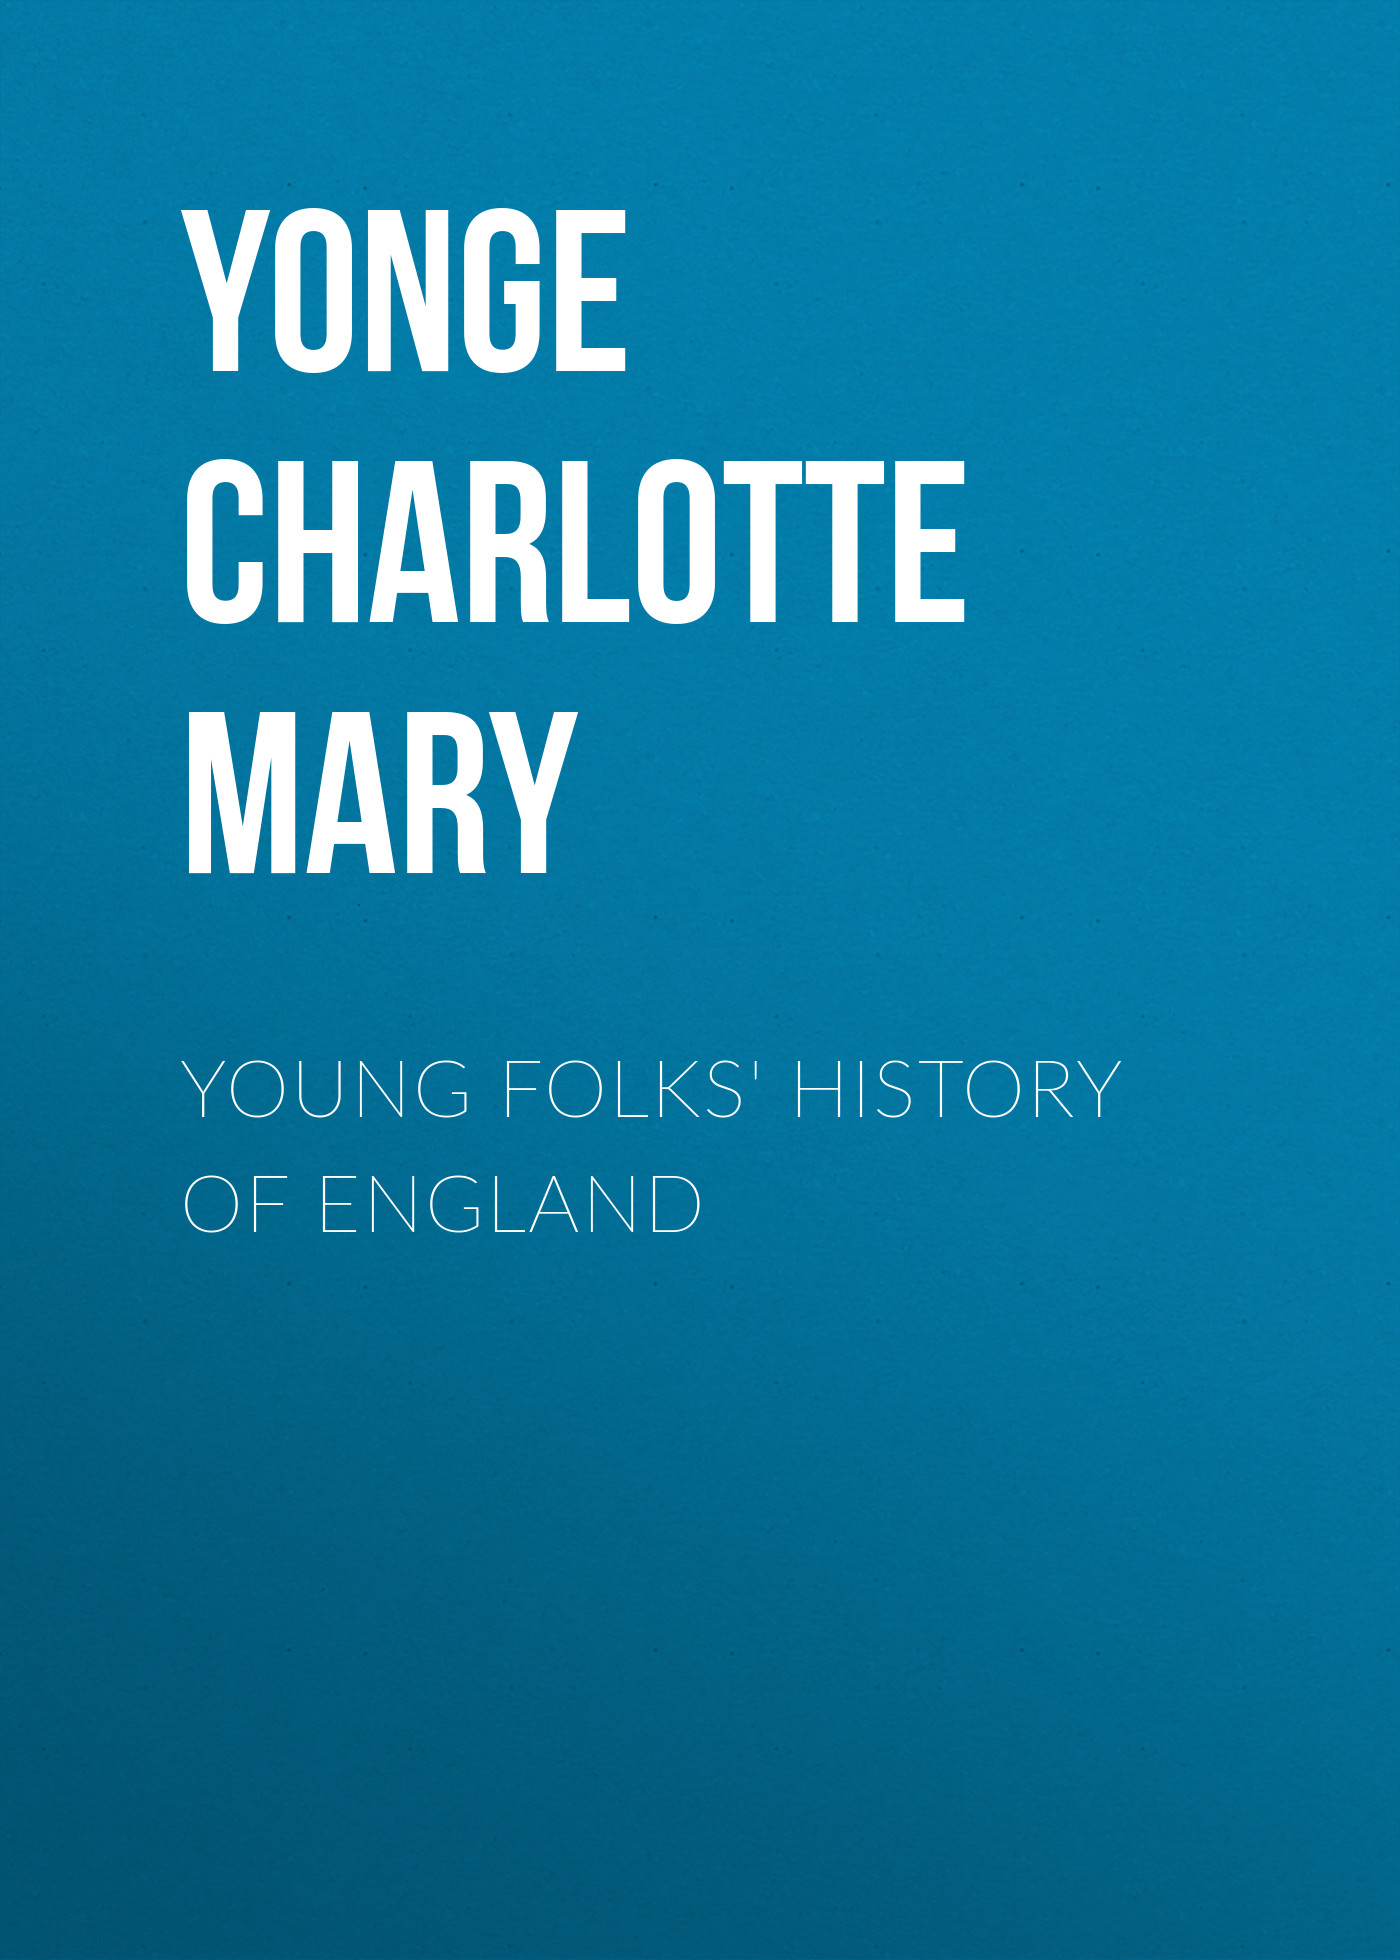 Книга Young Folks' History of England из серии , созданная Charlotte Yonge, написана в жанре Историческая фантастика, Зарубежная старинная литература, Зарубежная классика, Исторические приключения. Стоимость электронной книги Young Folks' History of England с идентификатором 36093485 составляет 0 руб.